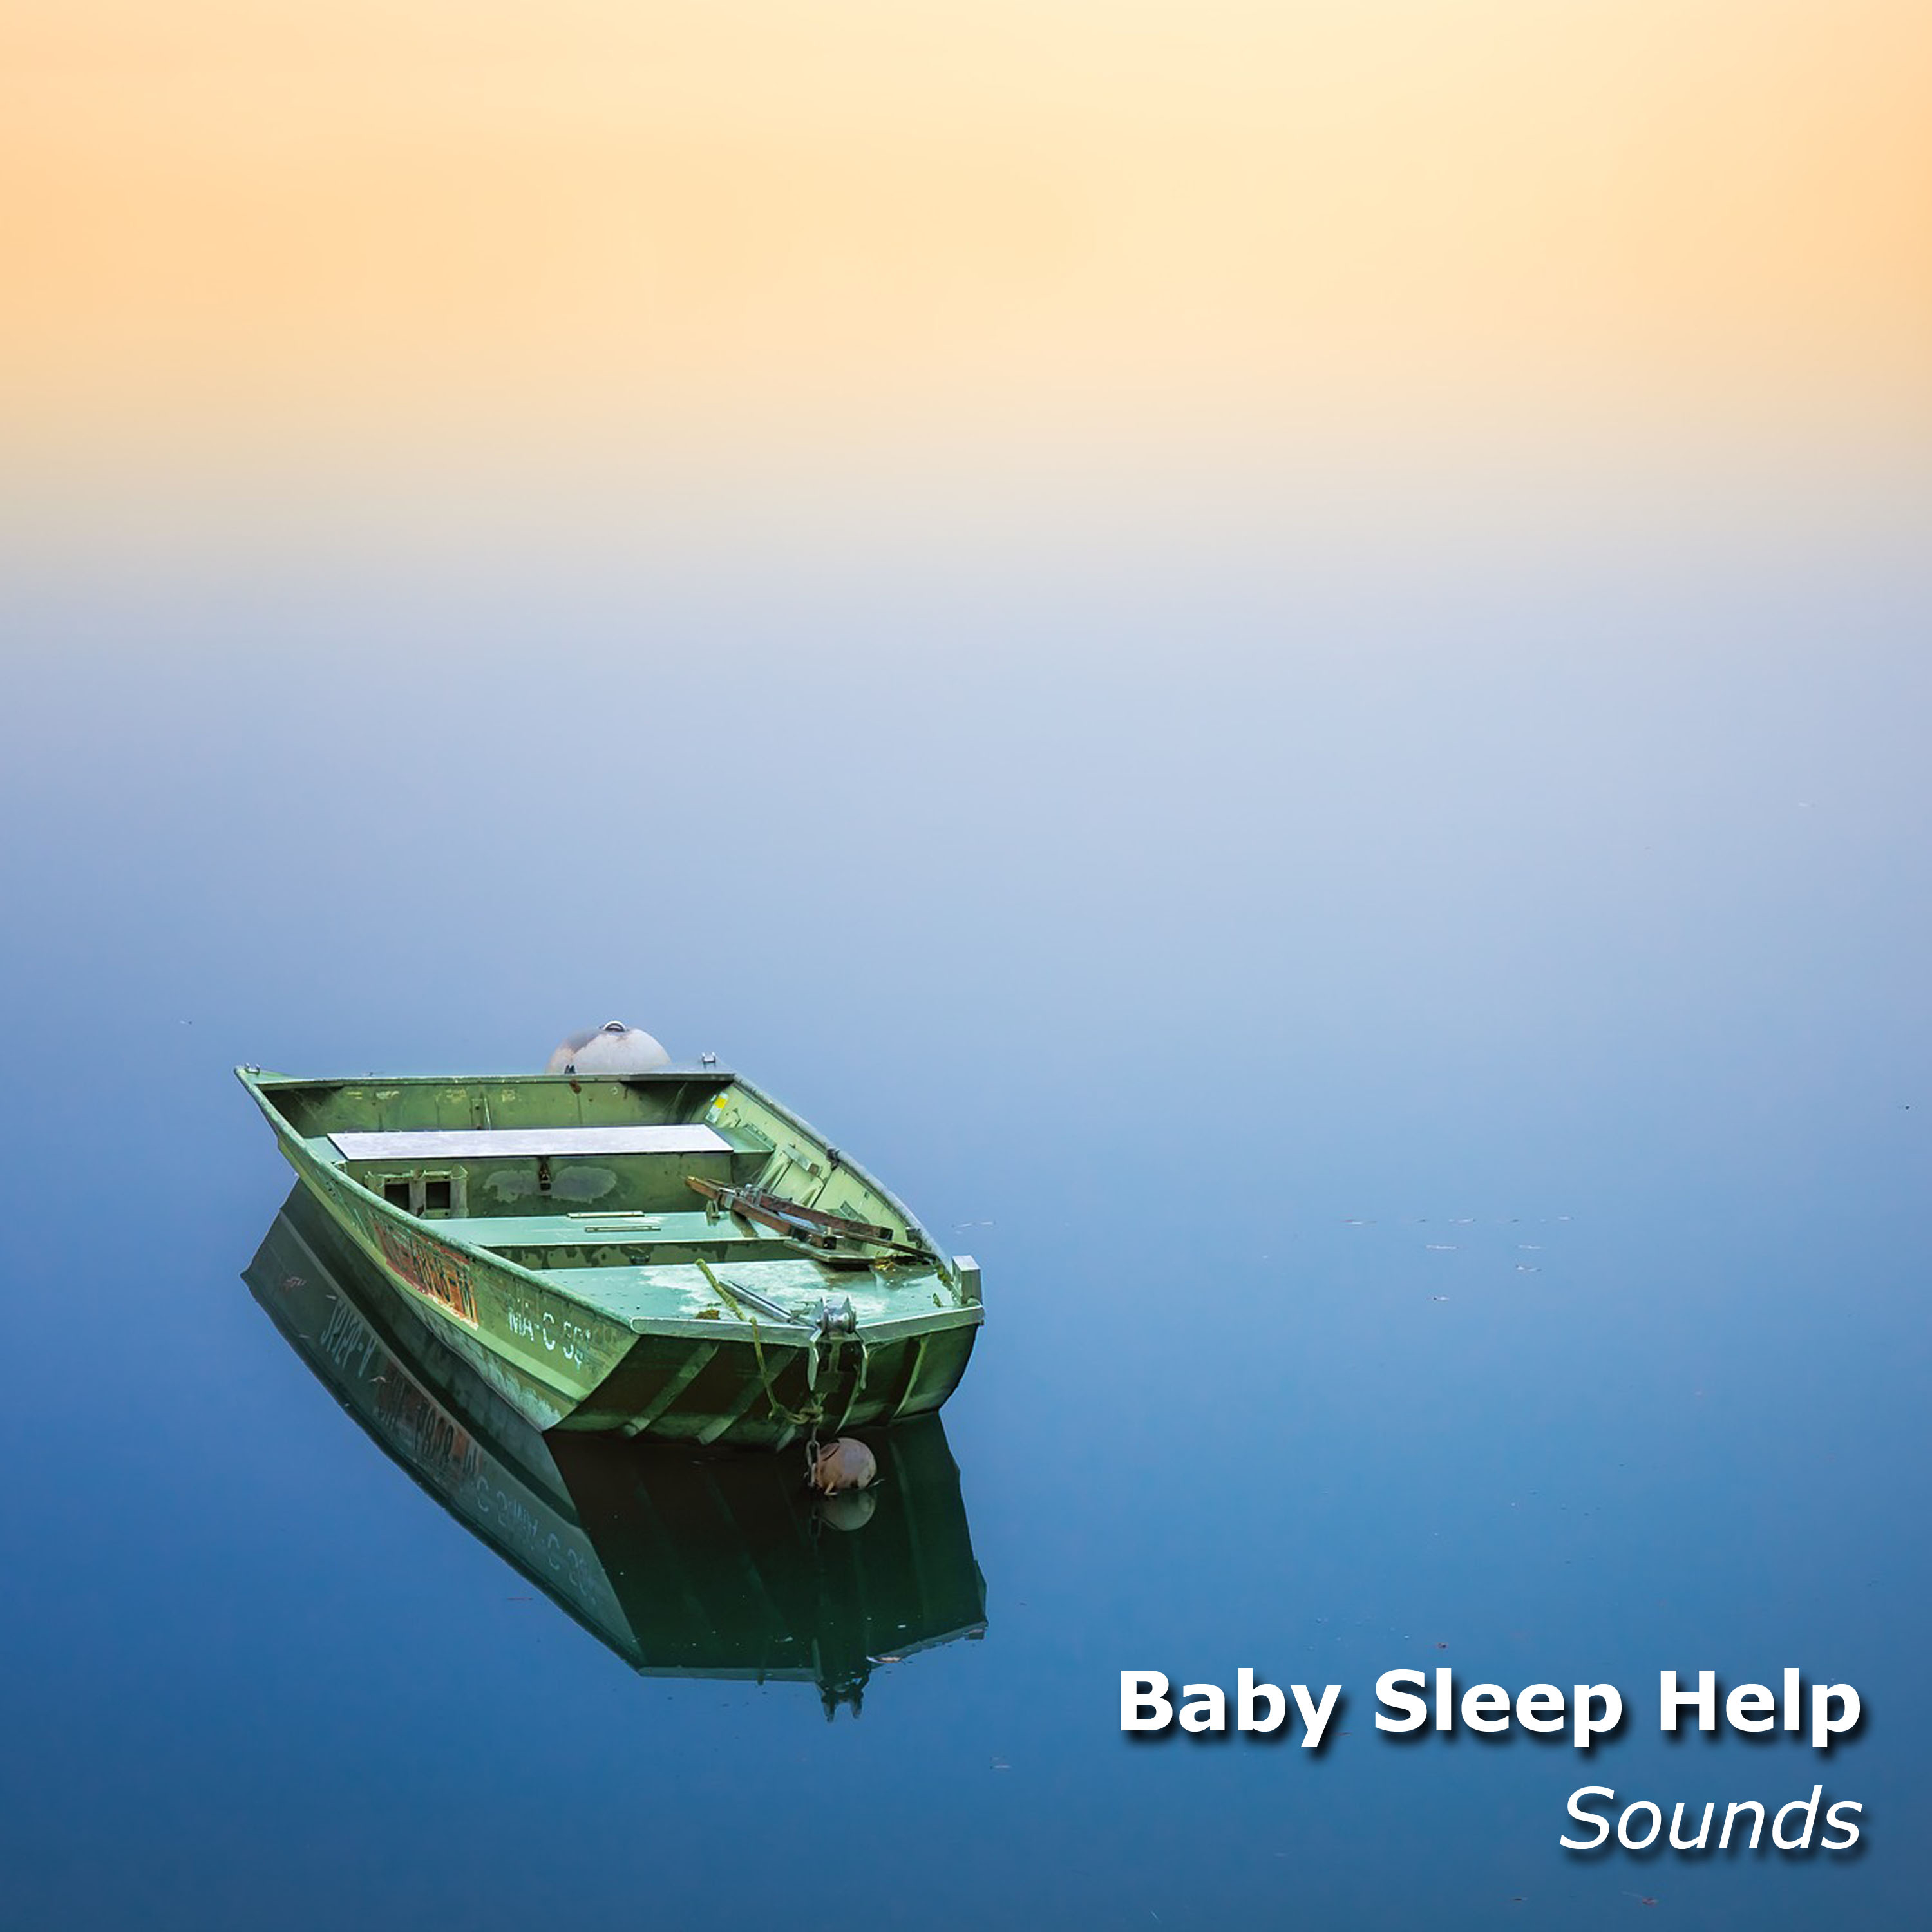 10 Baby Sleep Help Sounds